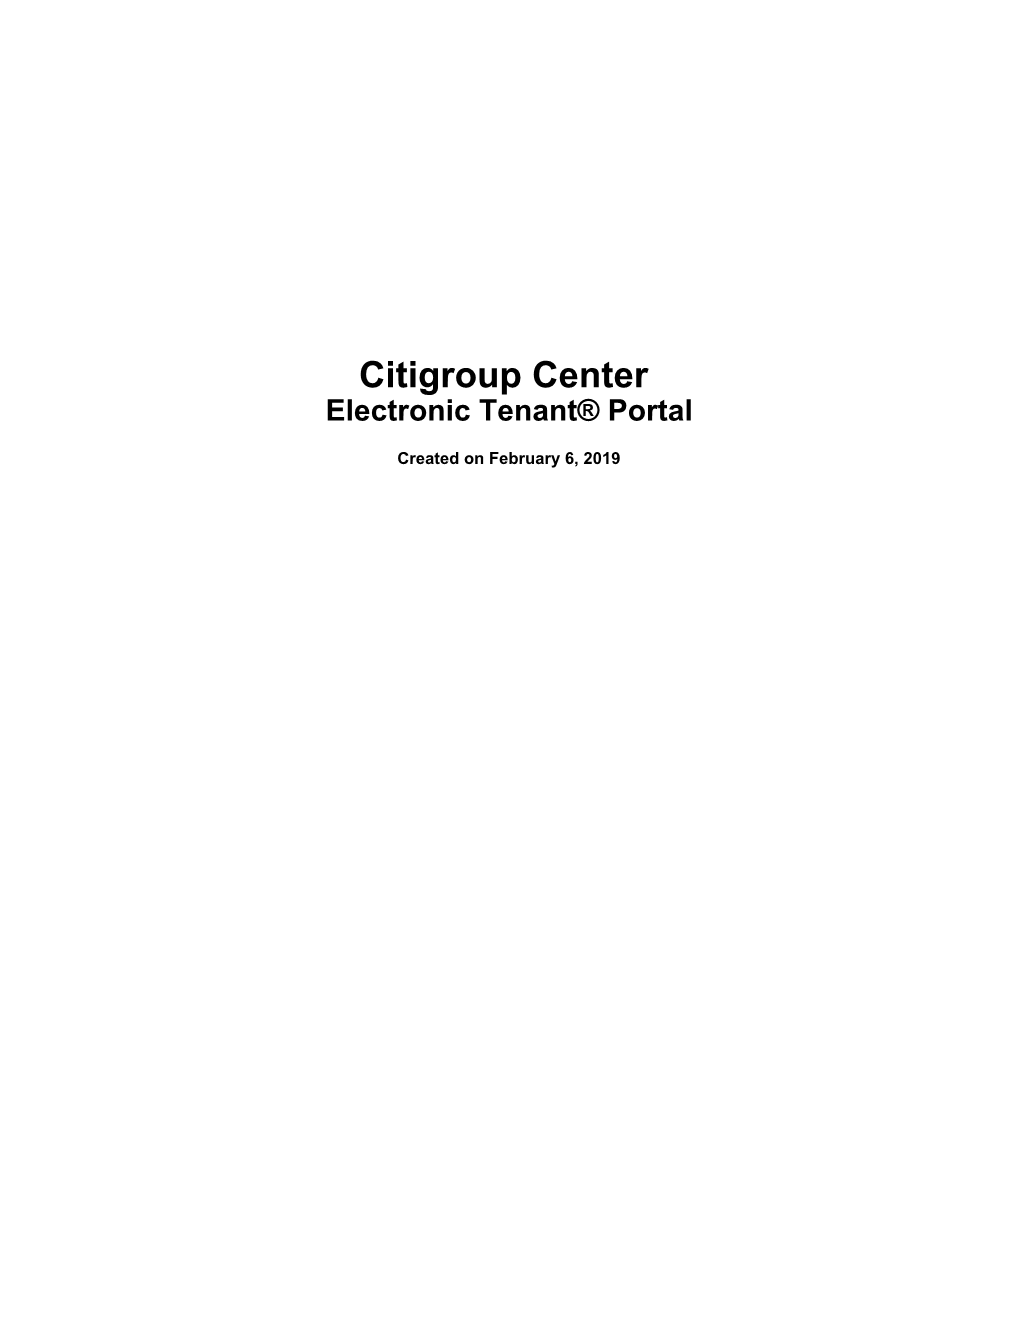 Citigroup Center Electronic Tenant® Portal